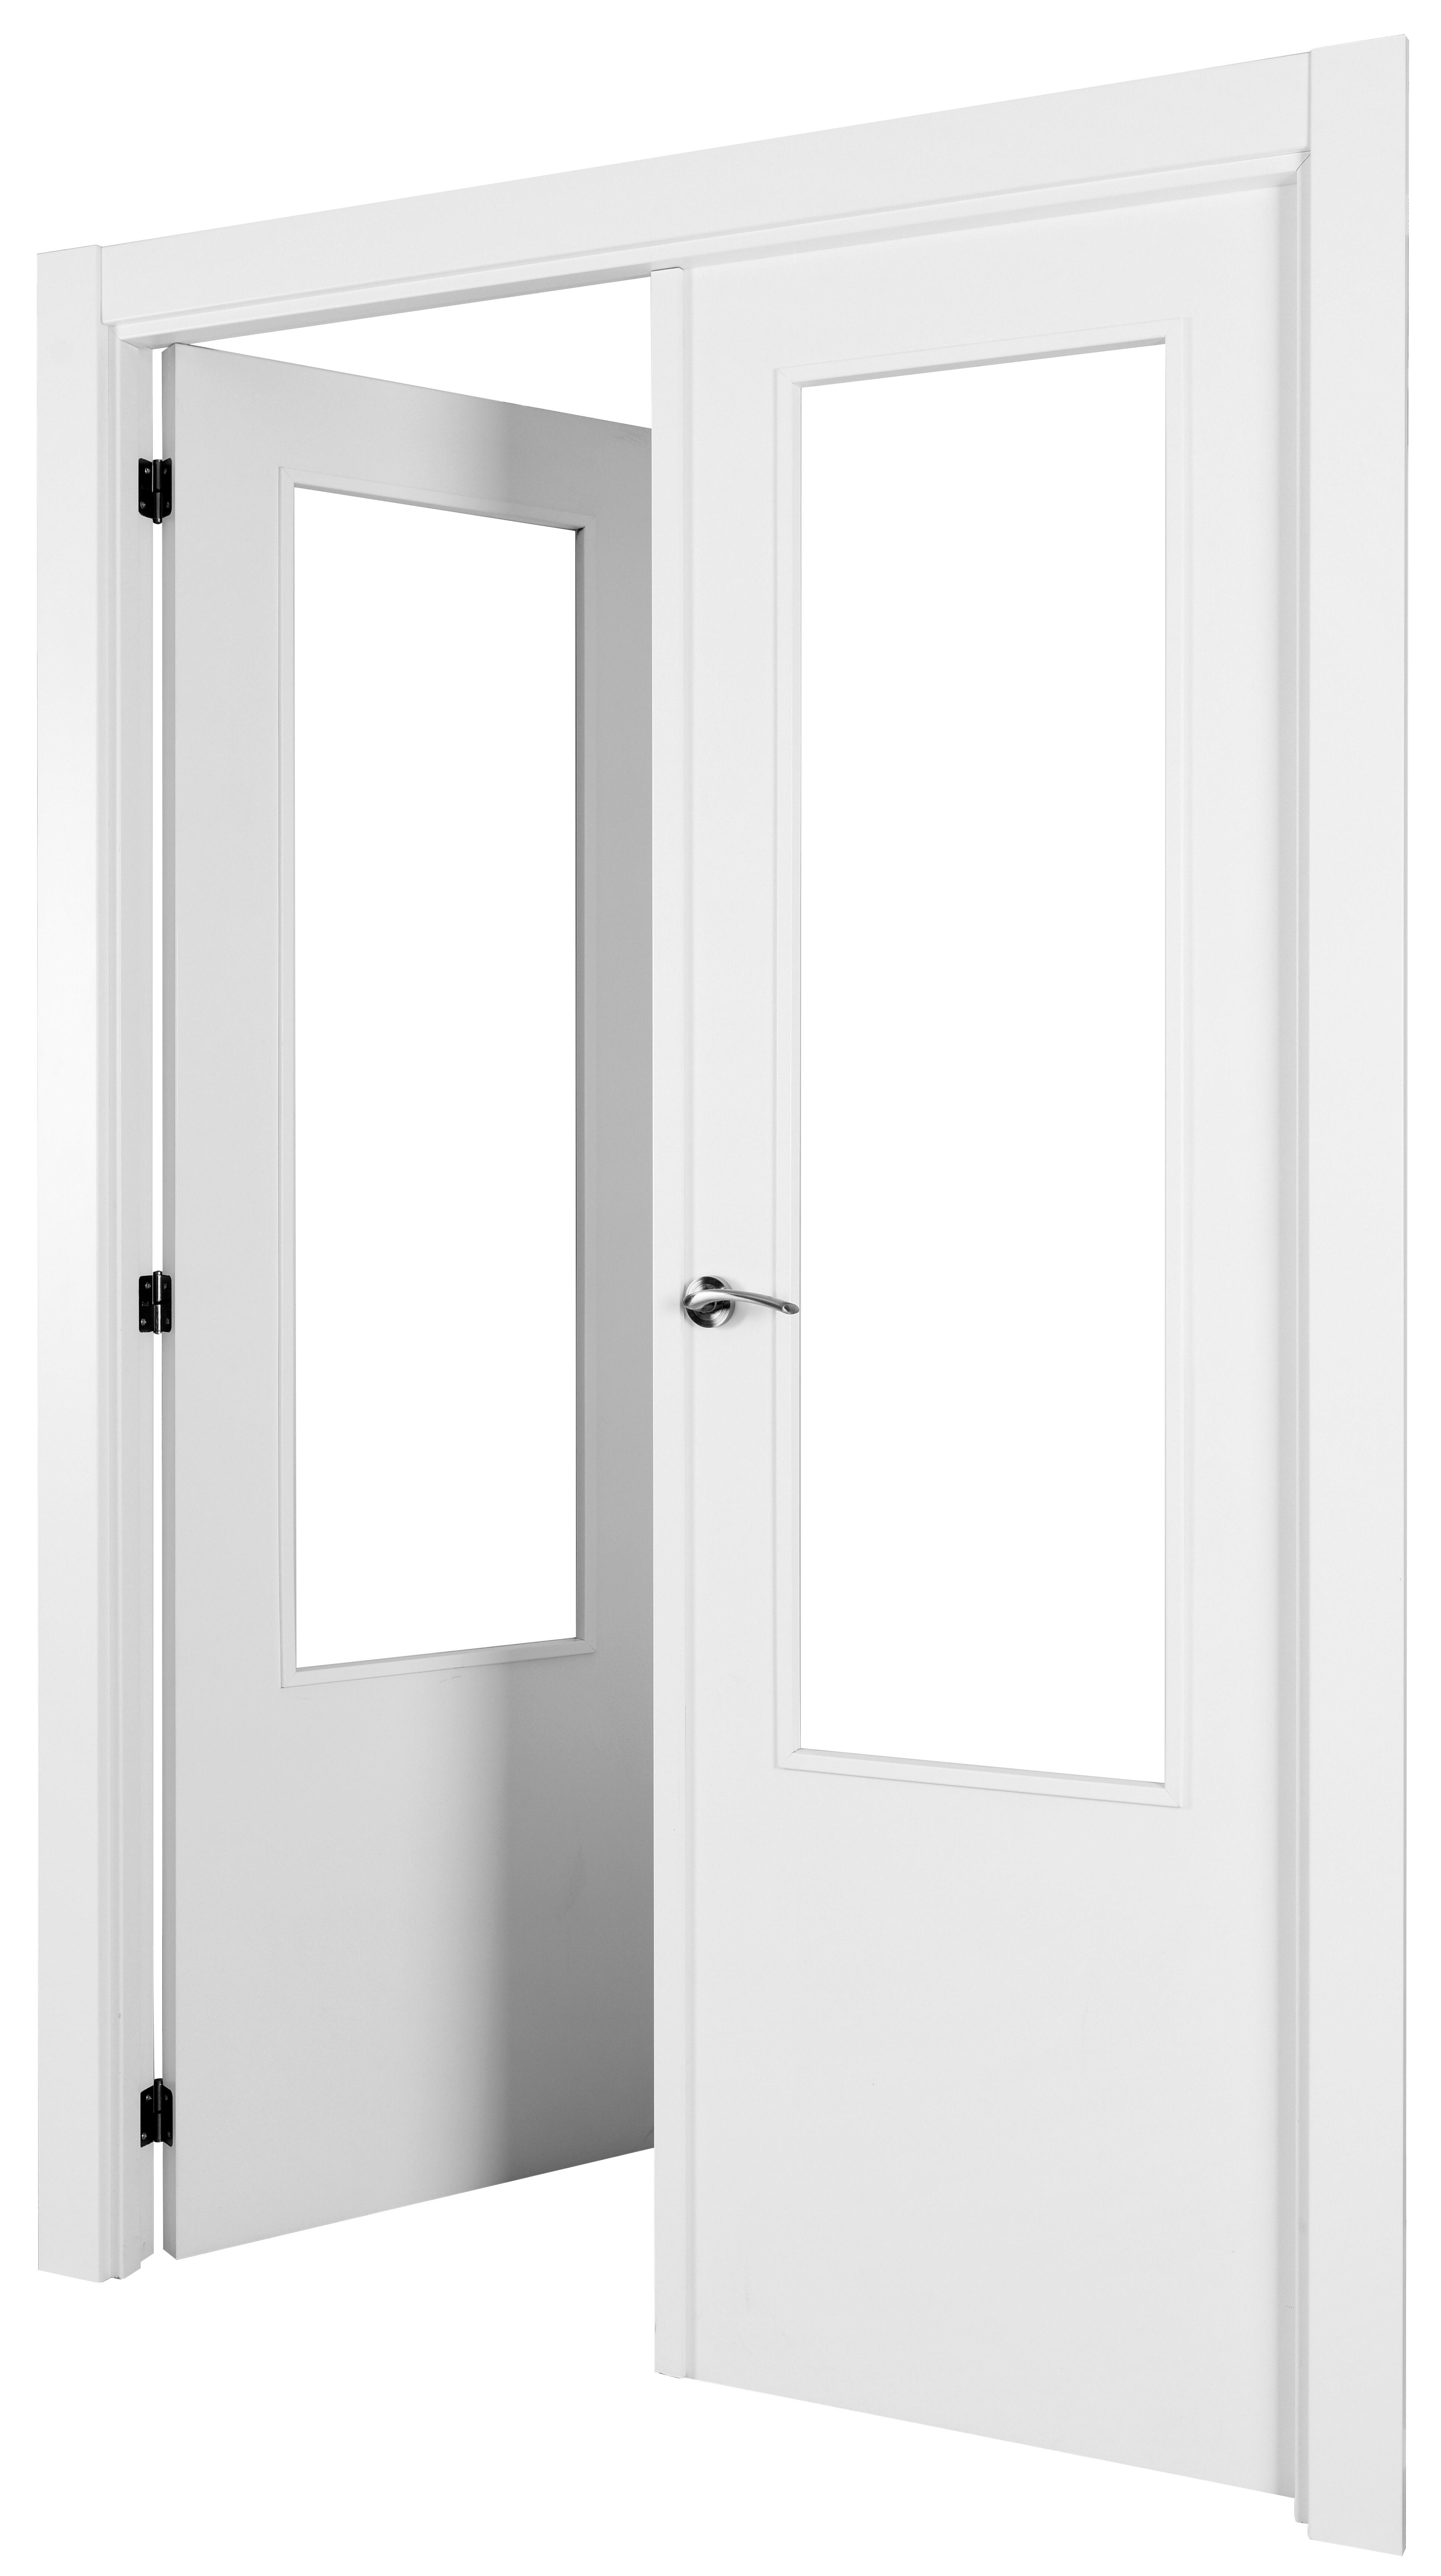 Puerta abatible lyon blanca aero blanco izquierda con cristal de 90x30 y 125cm